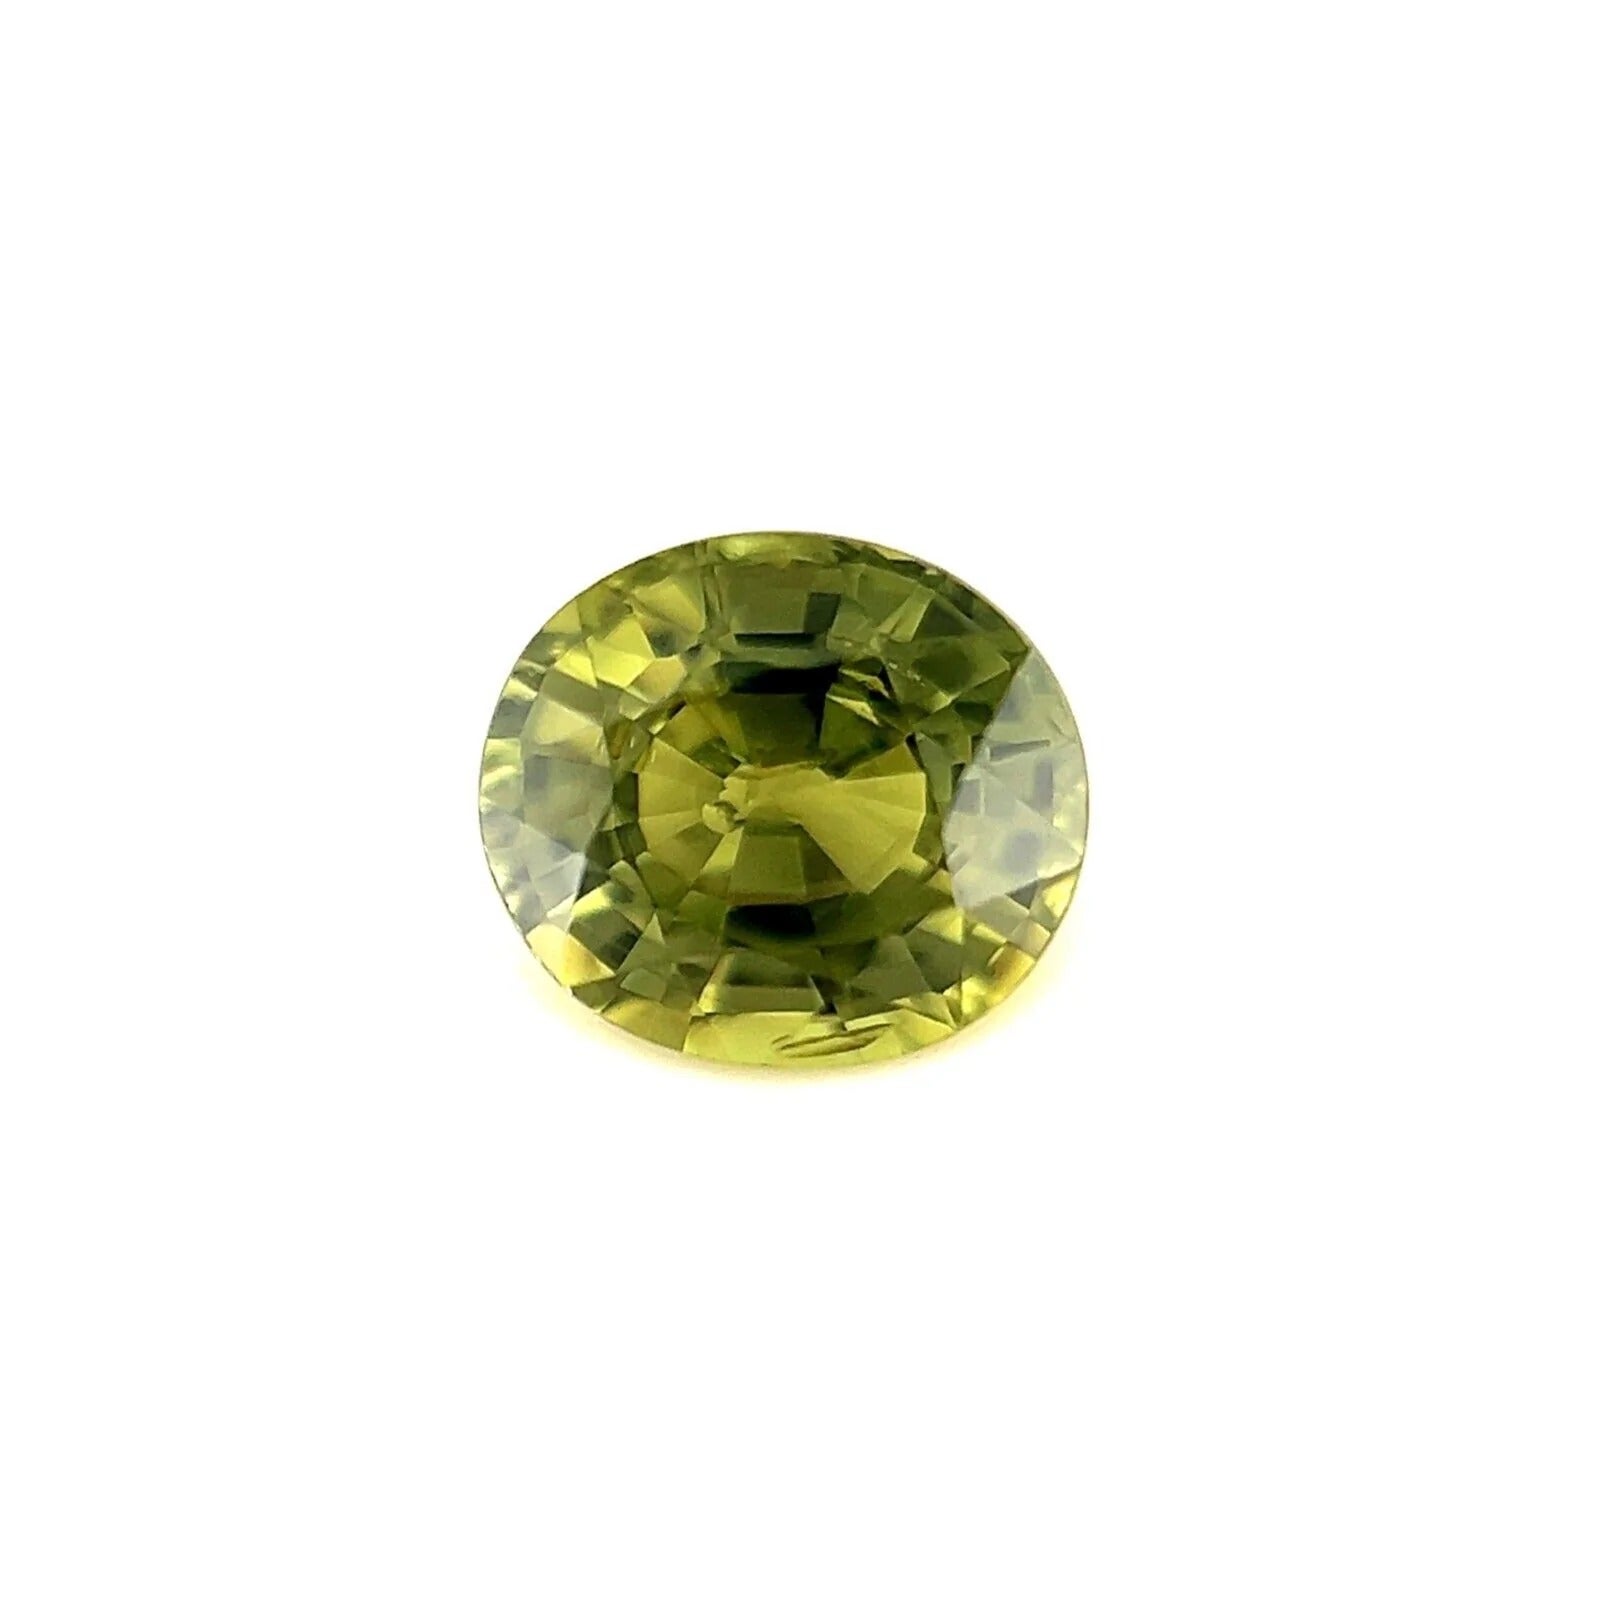 Couleur unique et rare saphir australien jaune et vert 0,95 carat, taille ovale 5,8 x 5,2 mm en vente